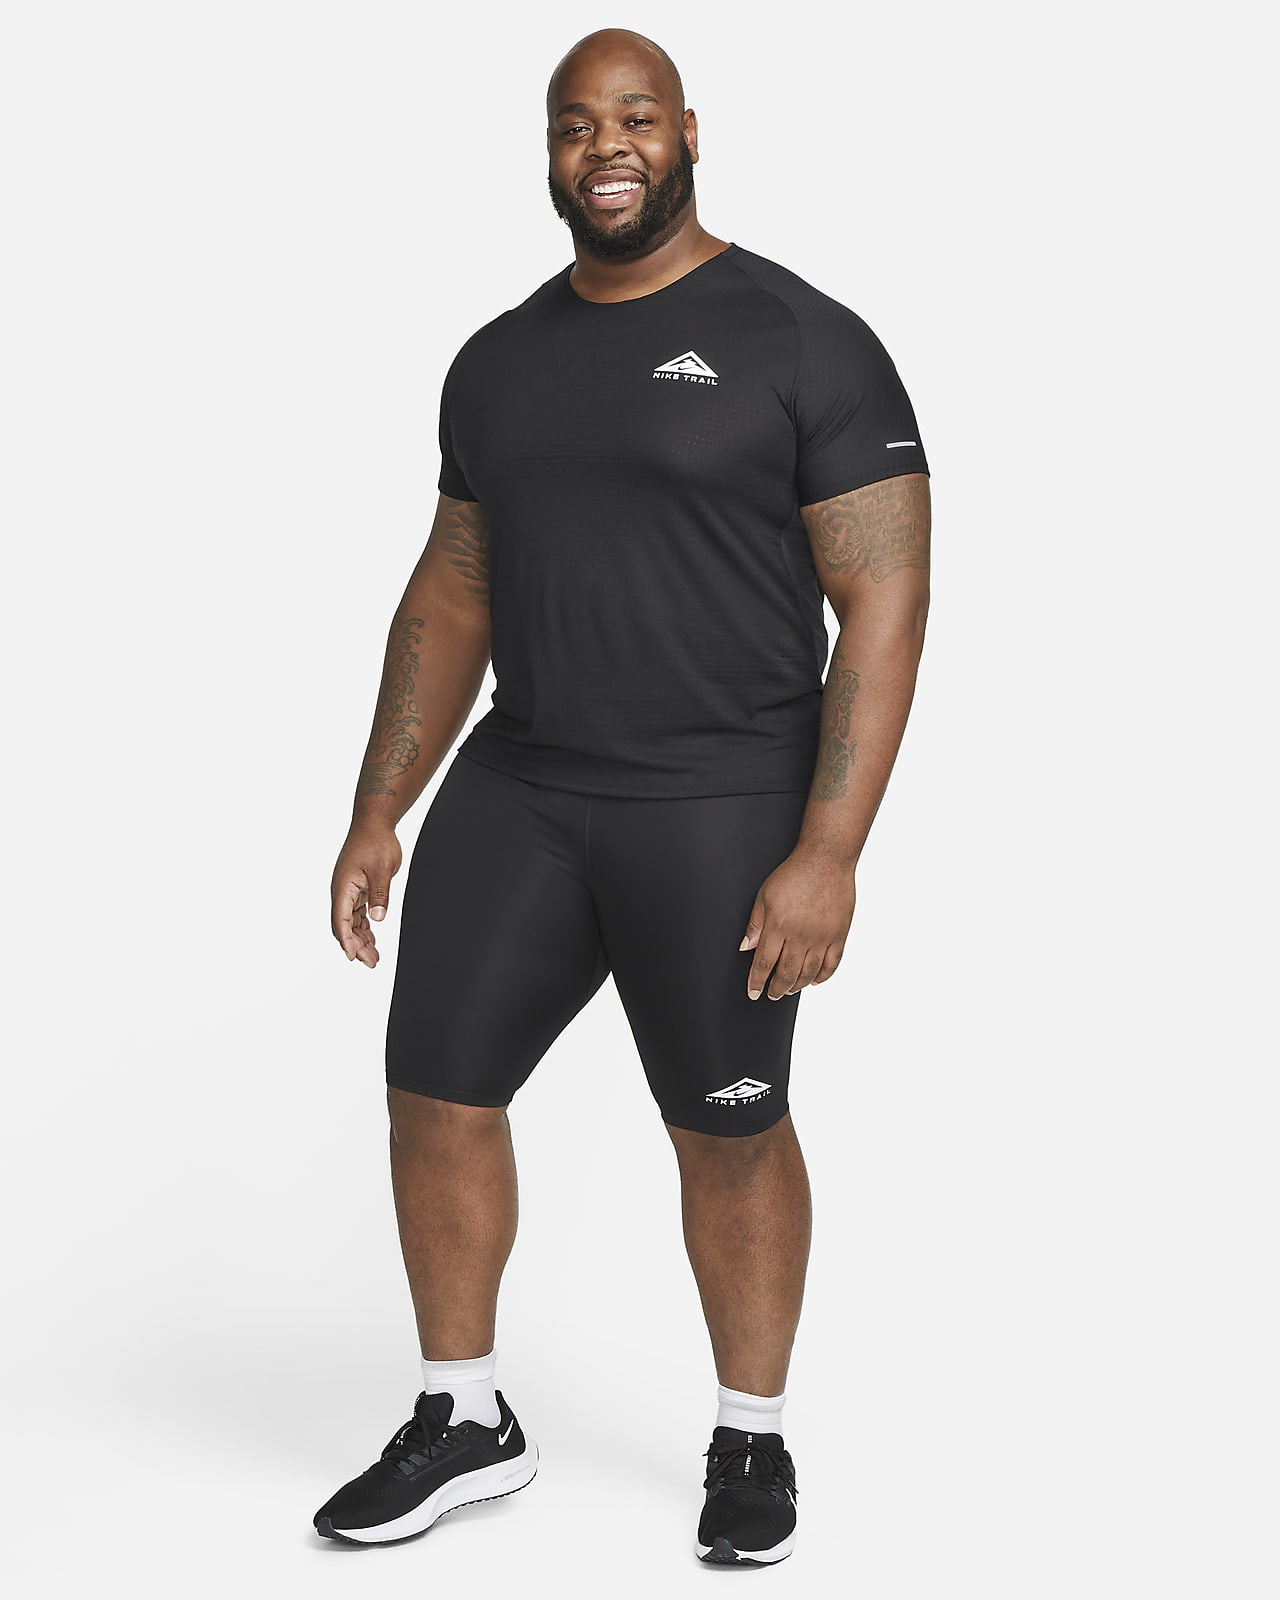 Nike Trail Half Tights - Men's